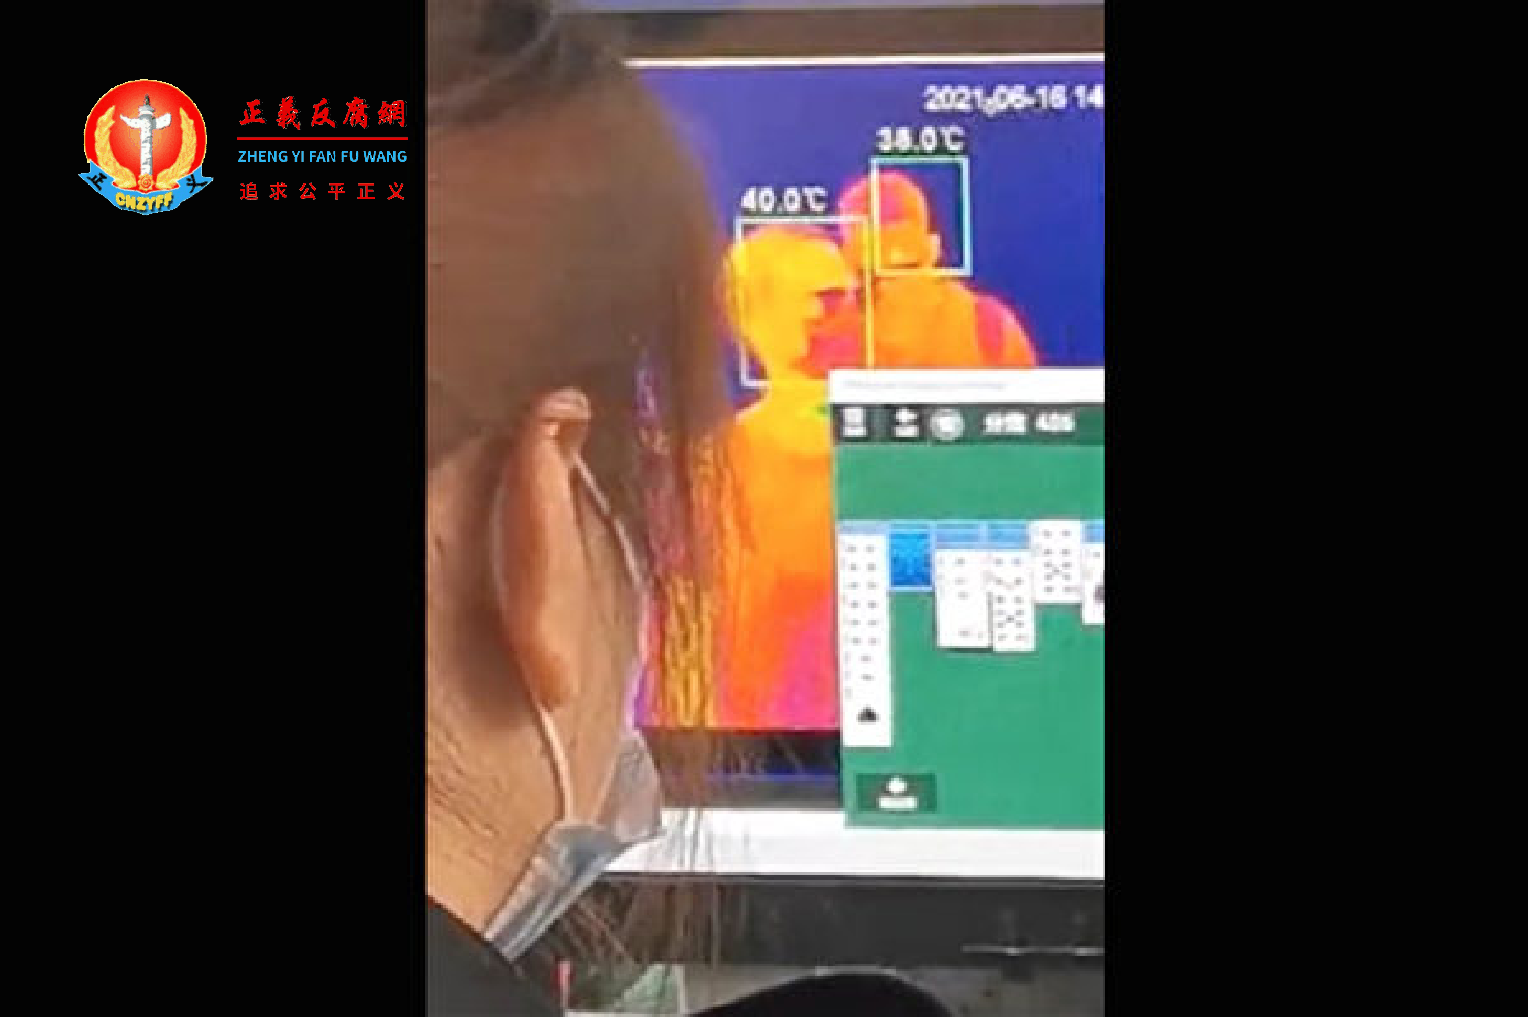 苏州站体温检测处一名安检员上班时间玩游戏，引发网民关注和热议。.png